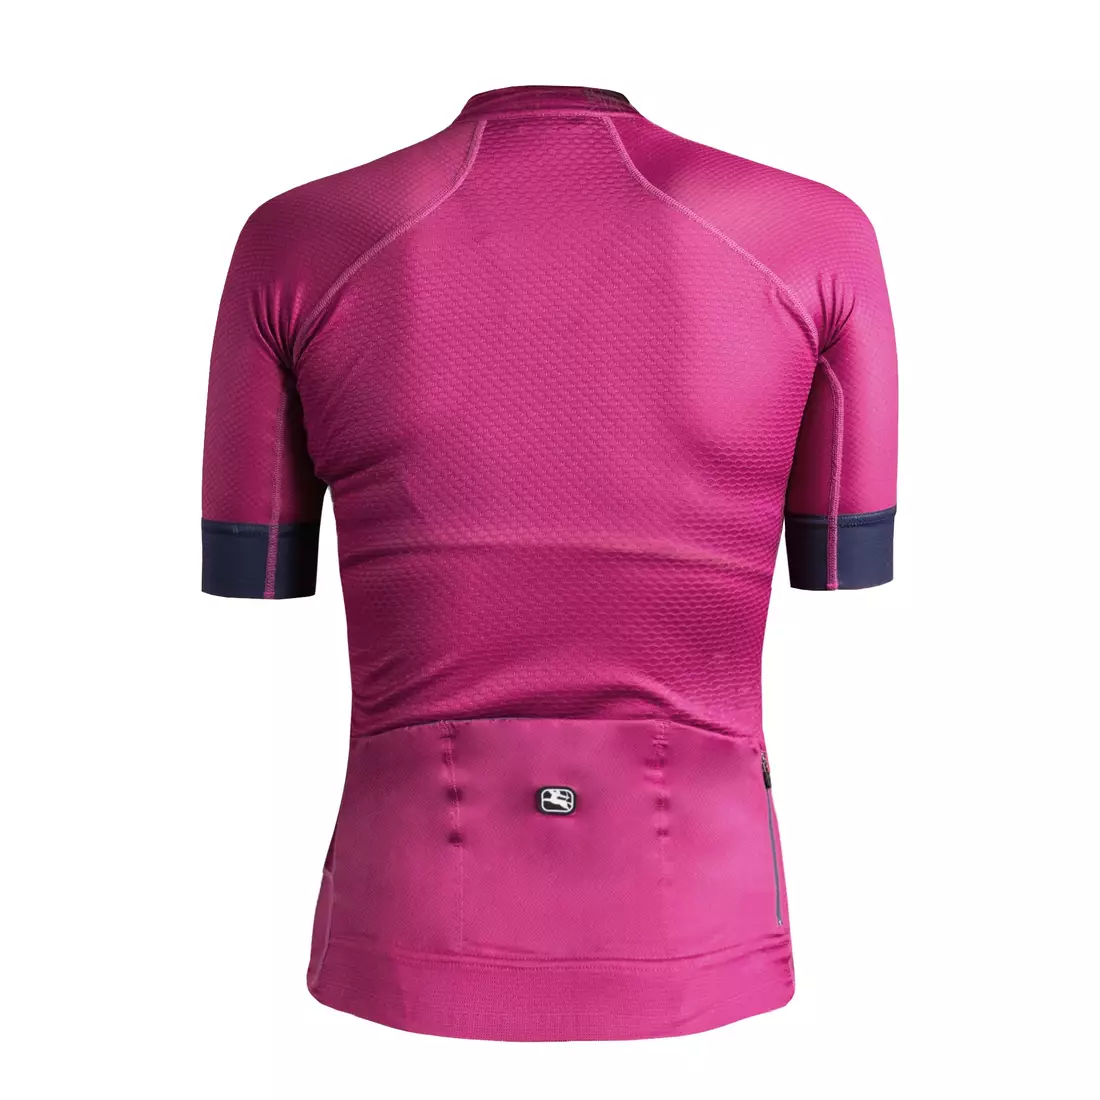 Dámský cyklistický dres GIORDANA FR-C PRO, fialový